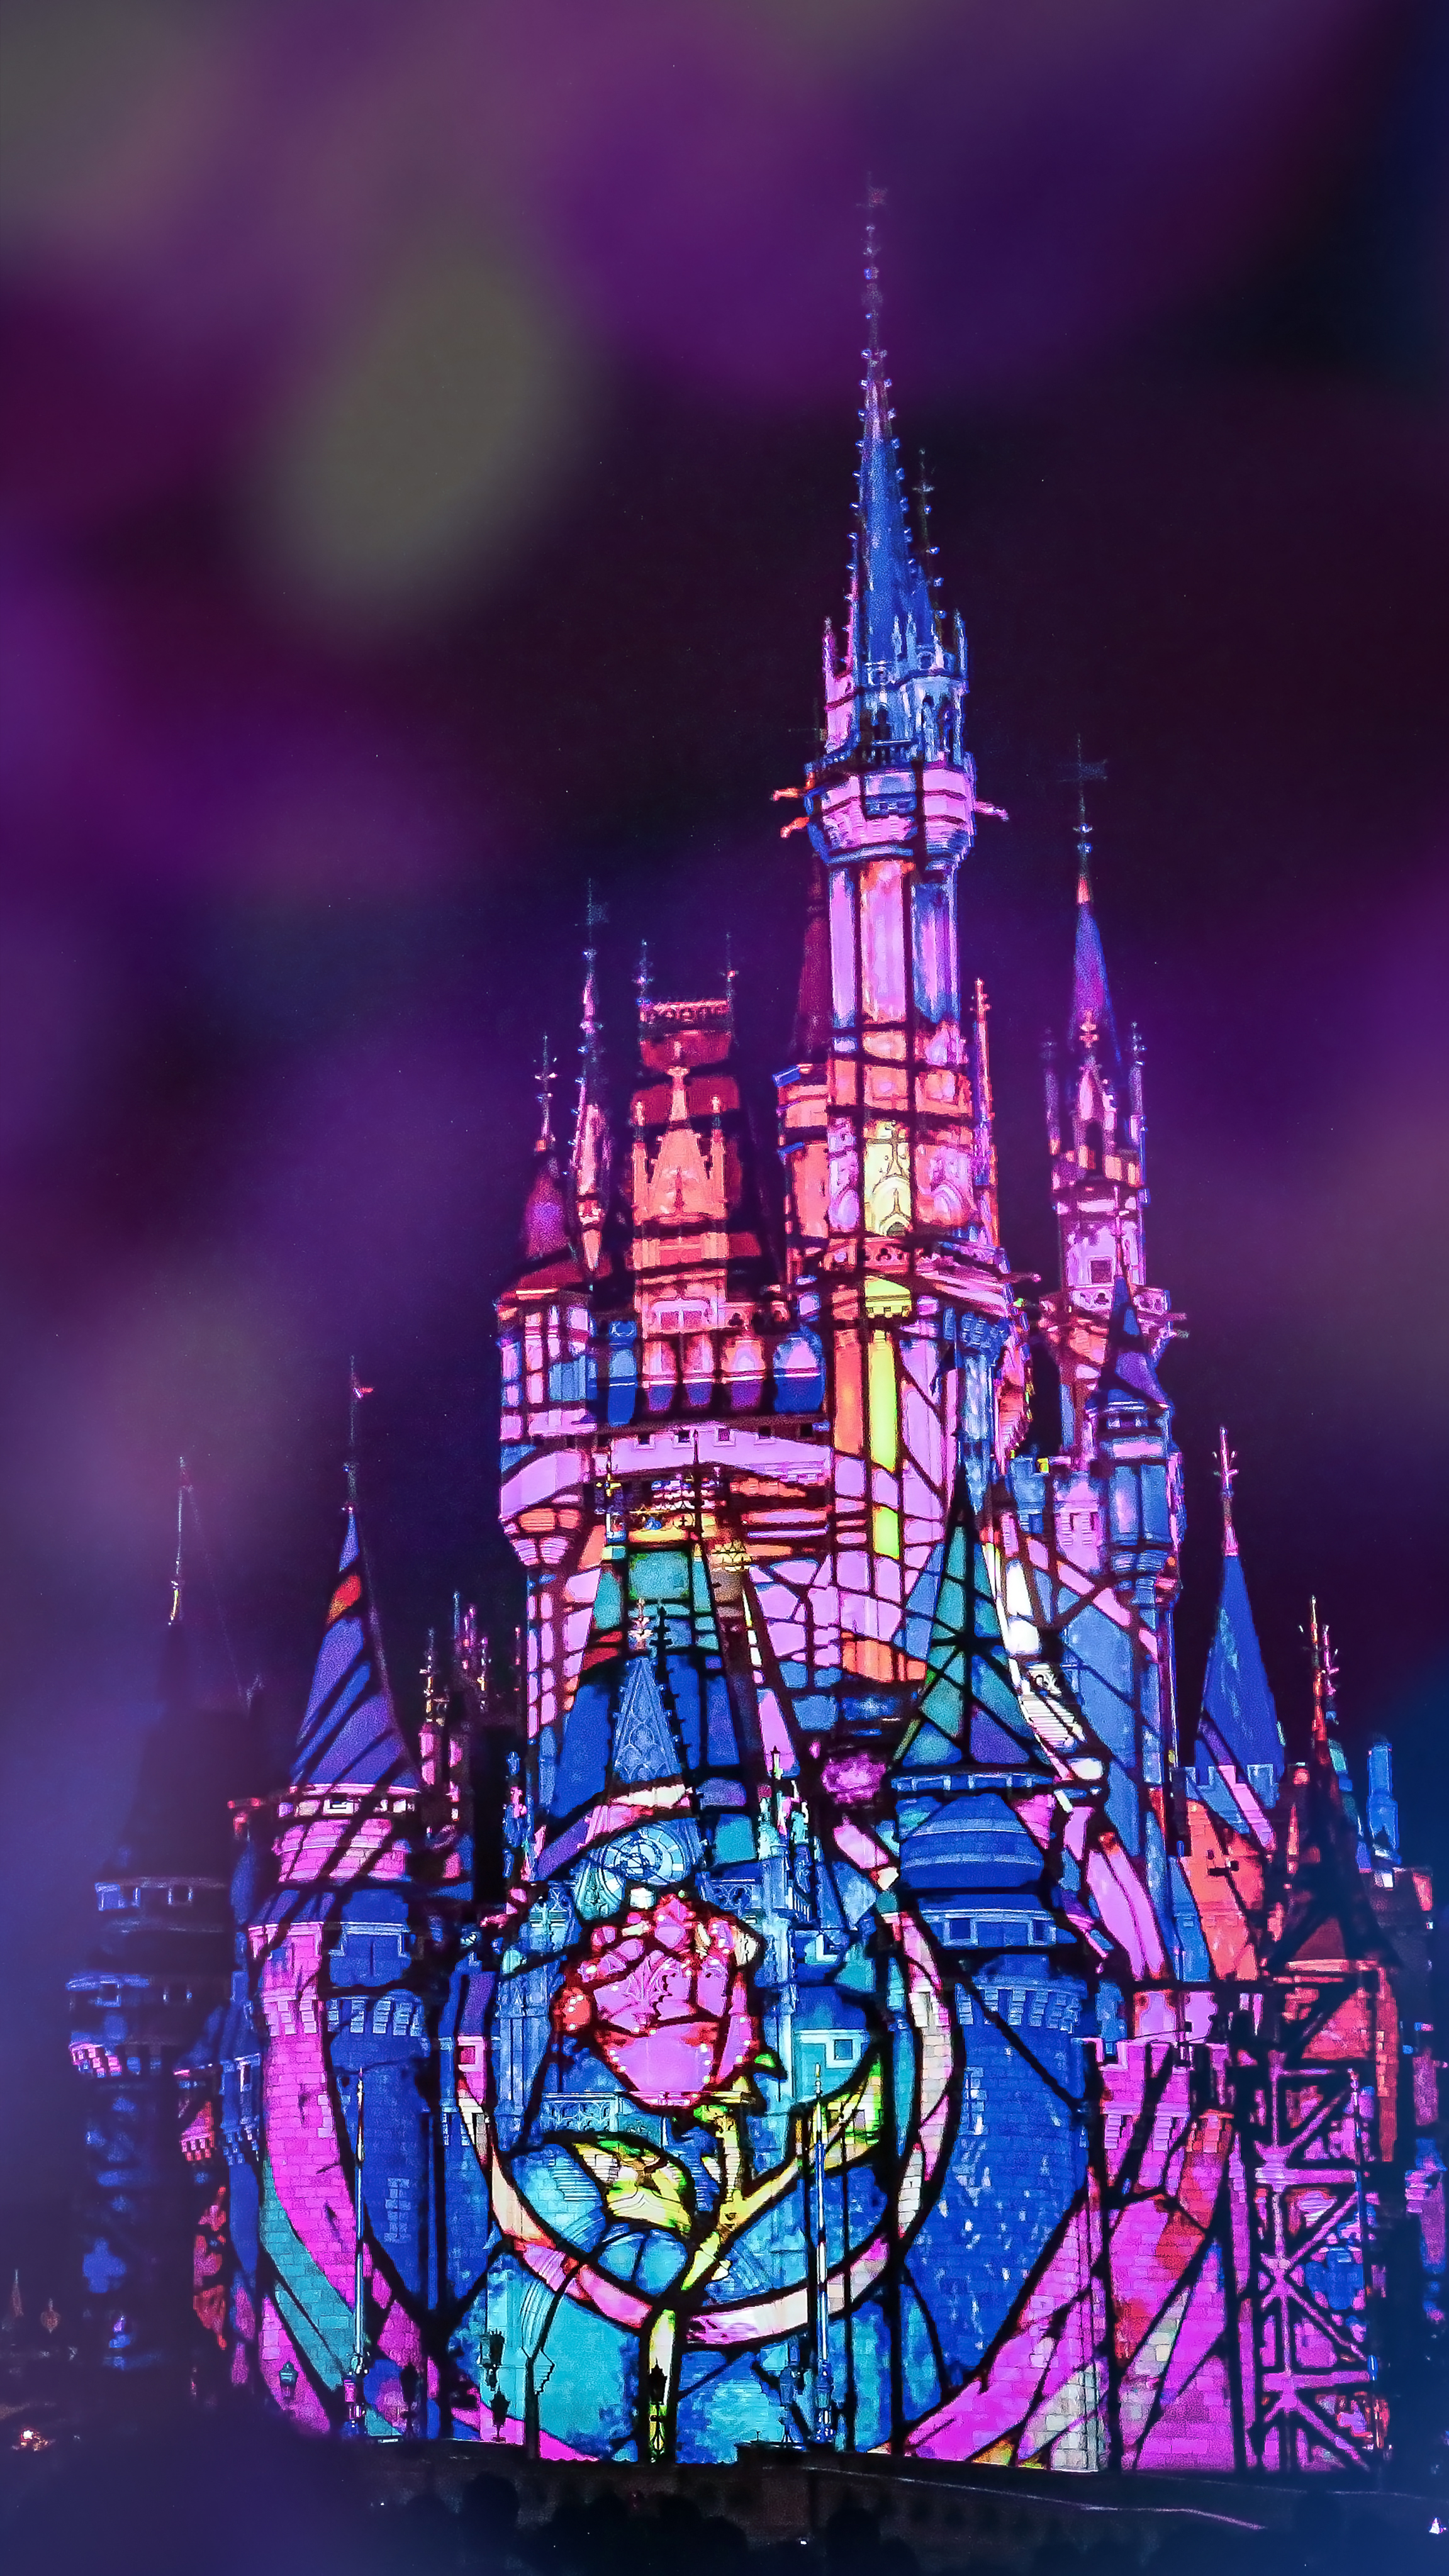 Daiki ディズニーランドのステンドグラス風シンデレラ城が素敵すぎた T Co Dec9wlskwq Twitter